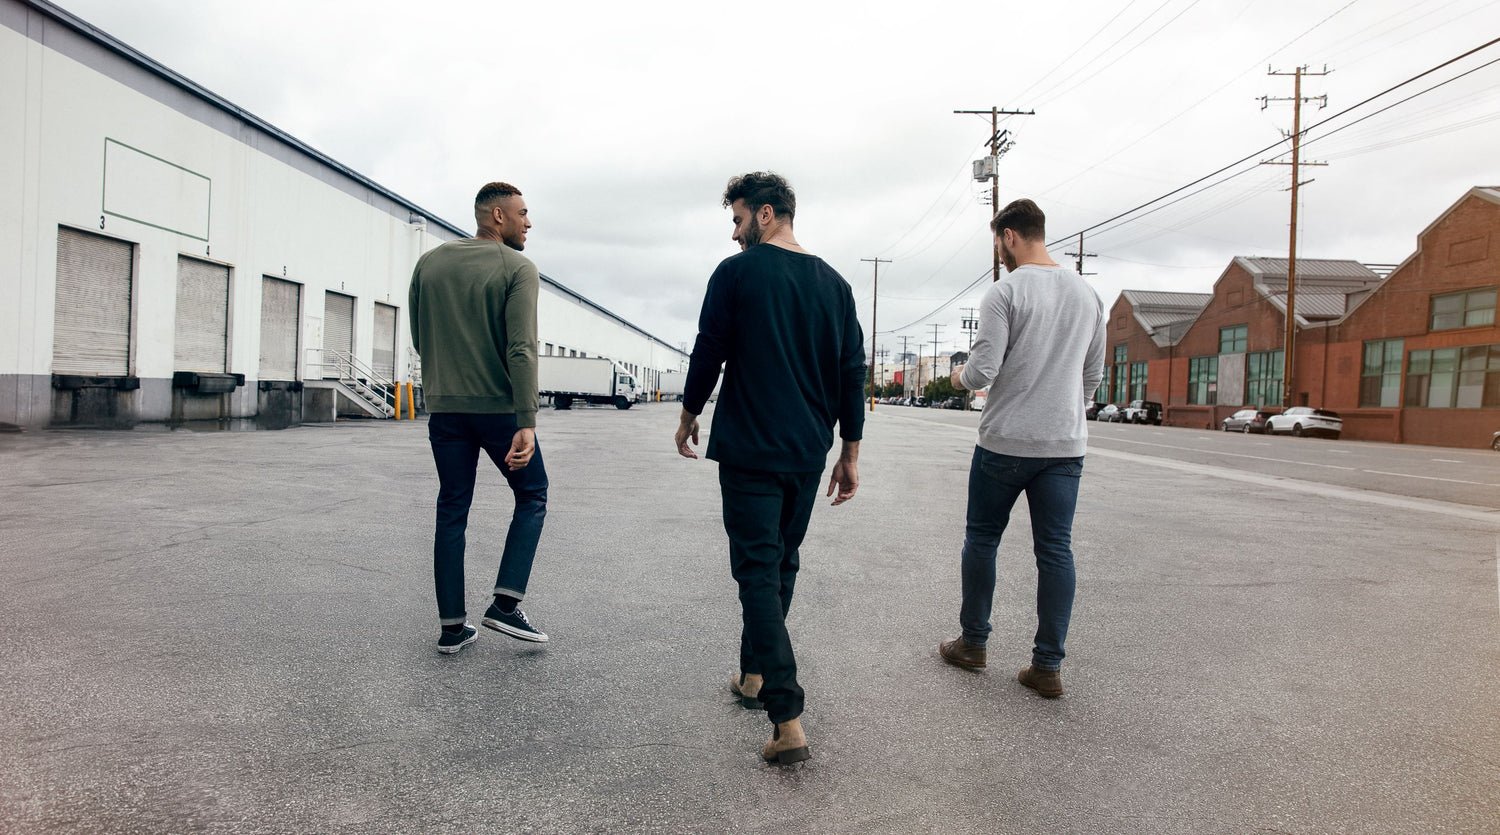 Three guys walking away wearing jeans